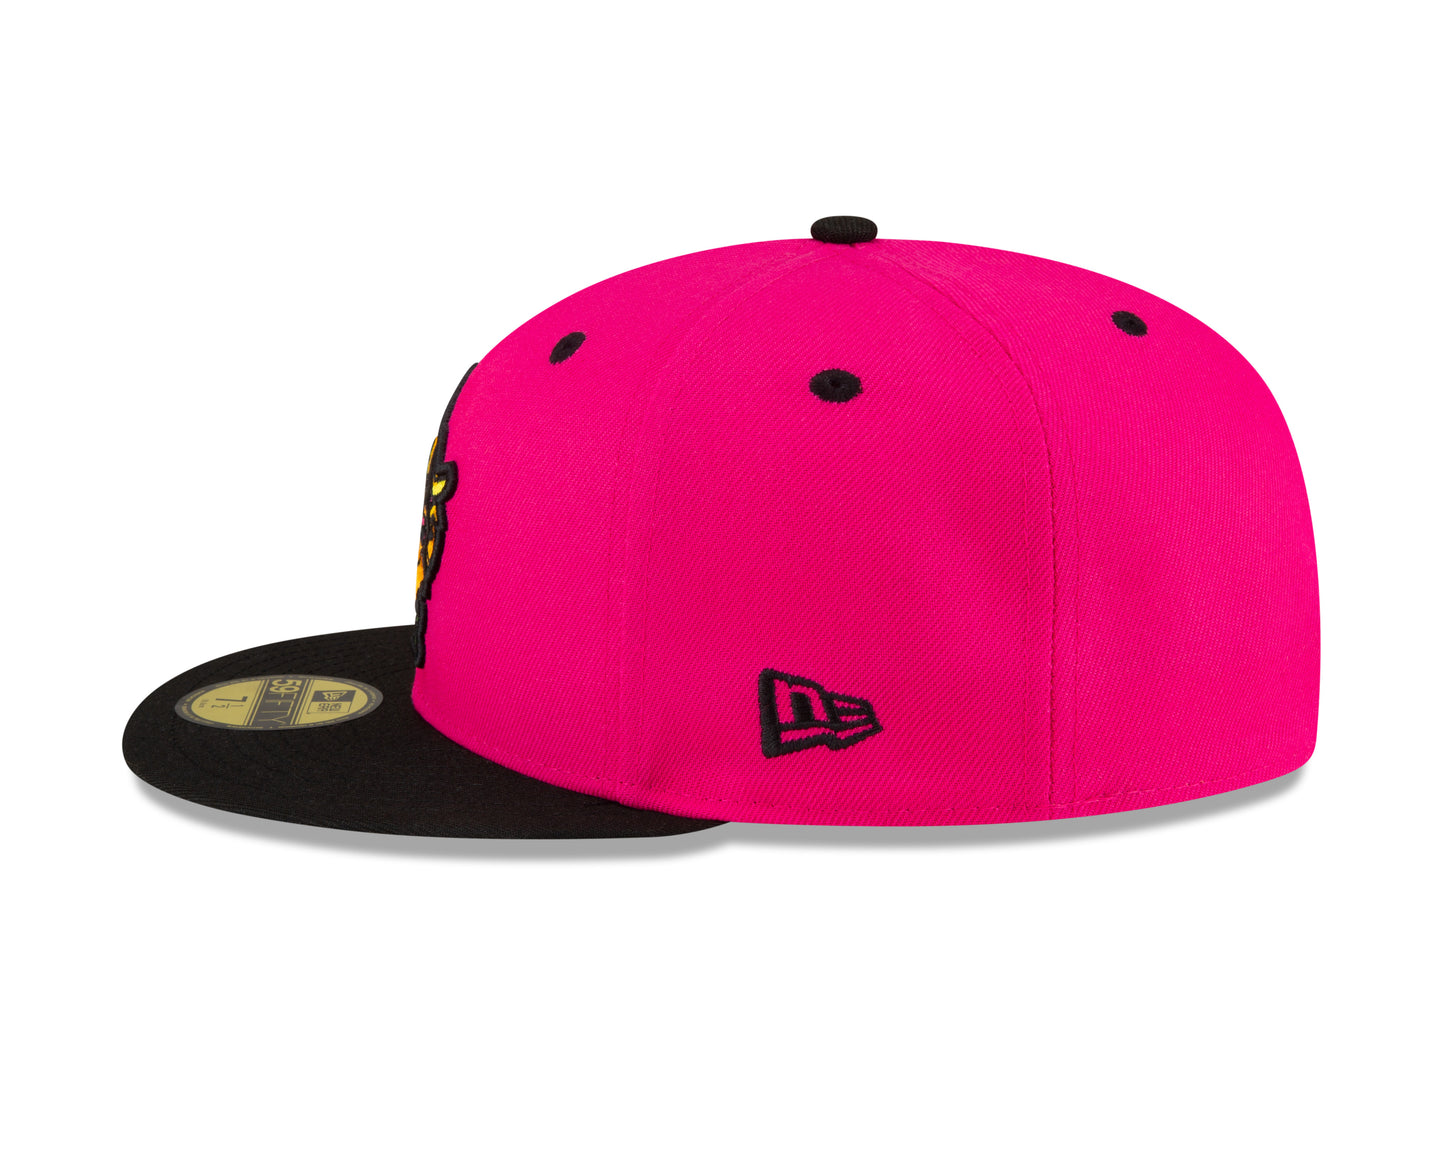 Party Animals 5950 Alternate Hat - Pink